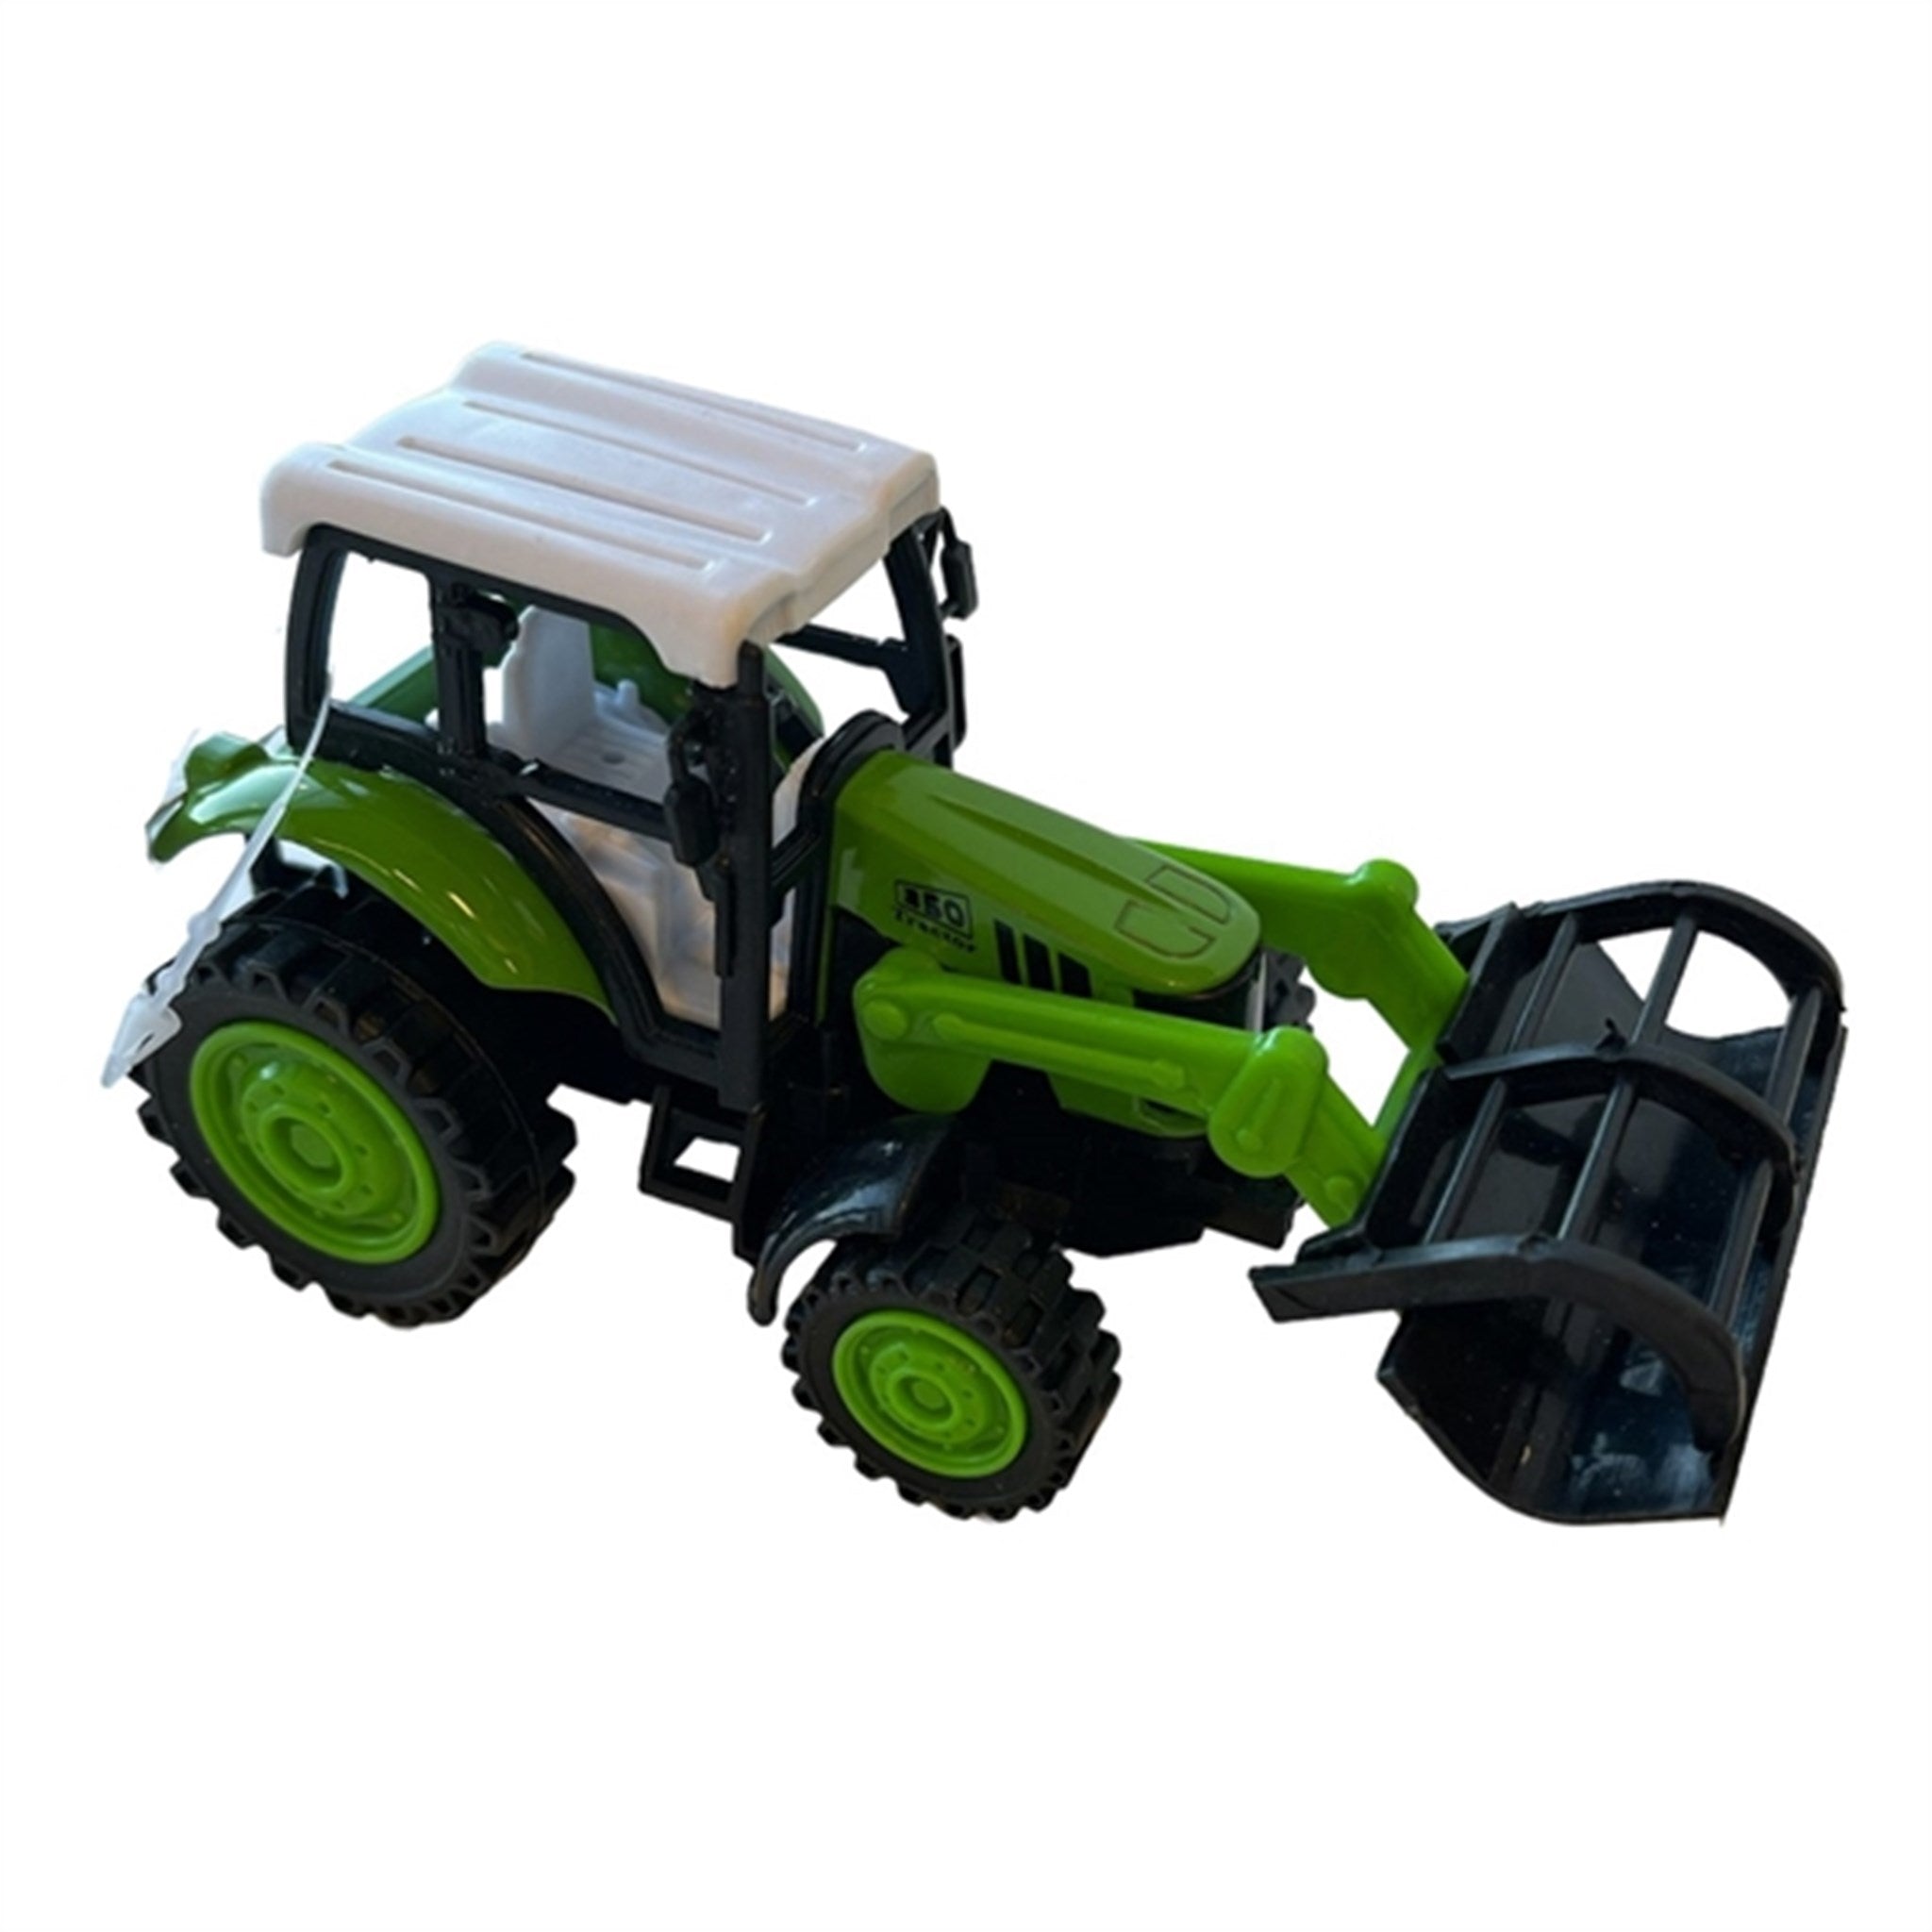 Magni Traktor Med Frontlæsser - Mørk Grøn